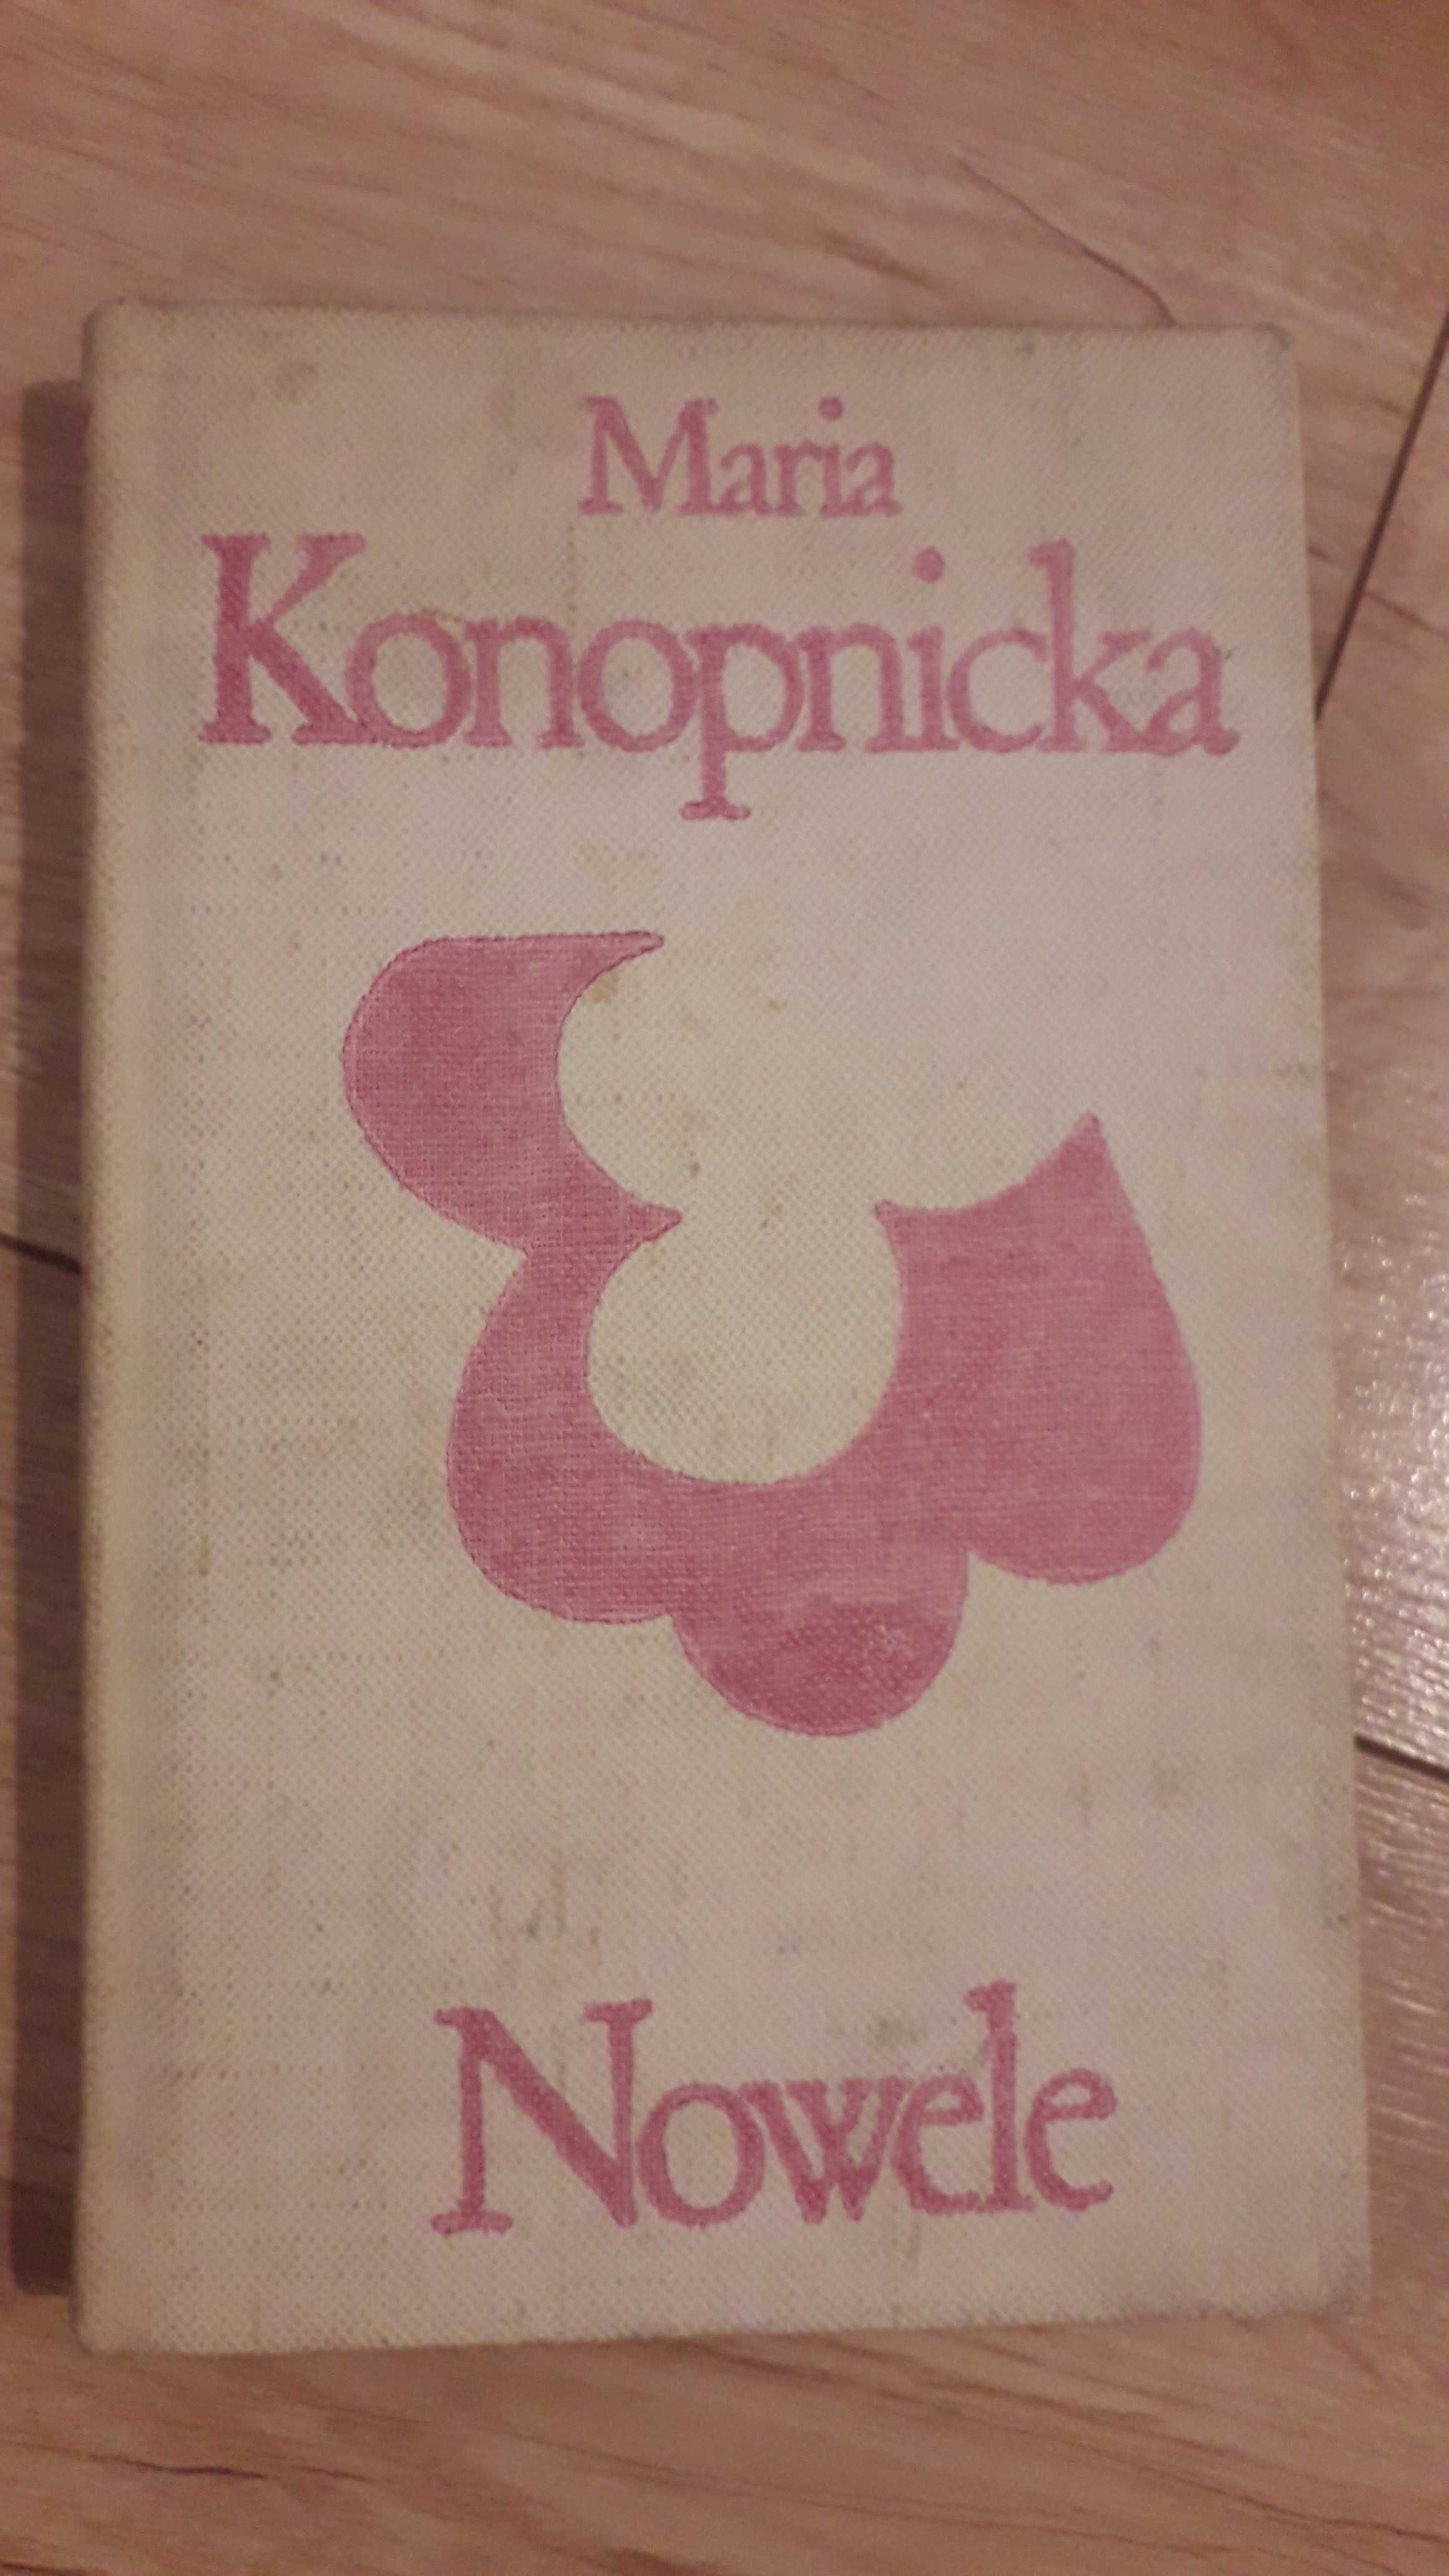 Maria Konopnicka - Nowele

rok wydania 1972